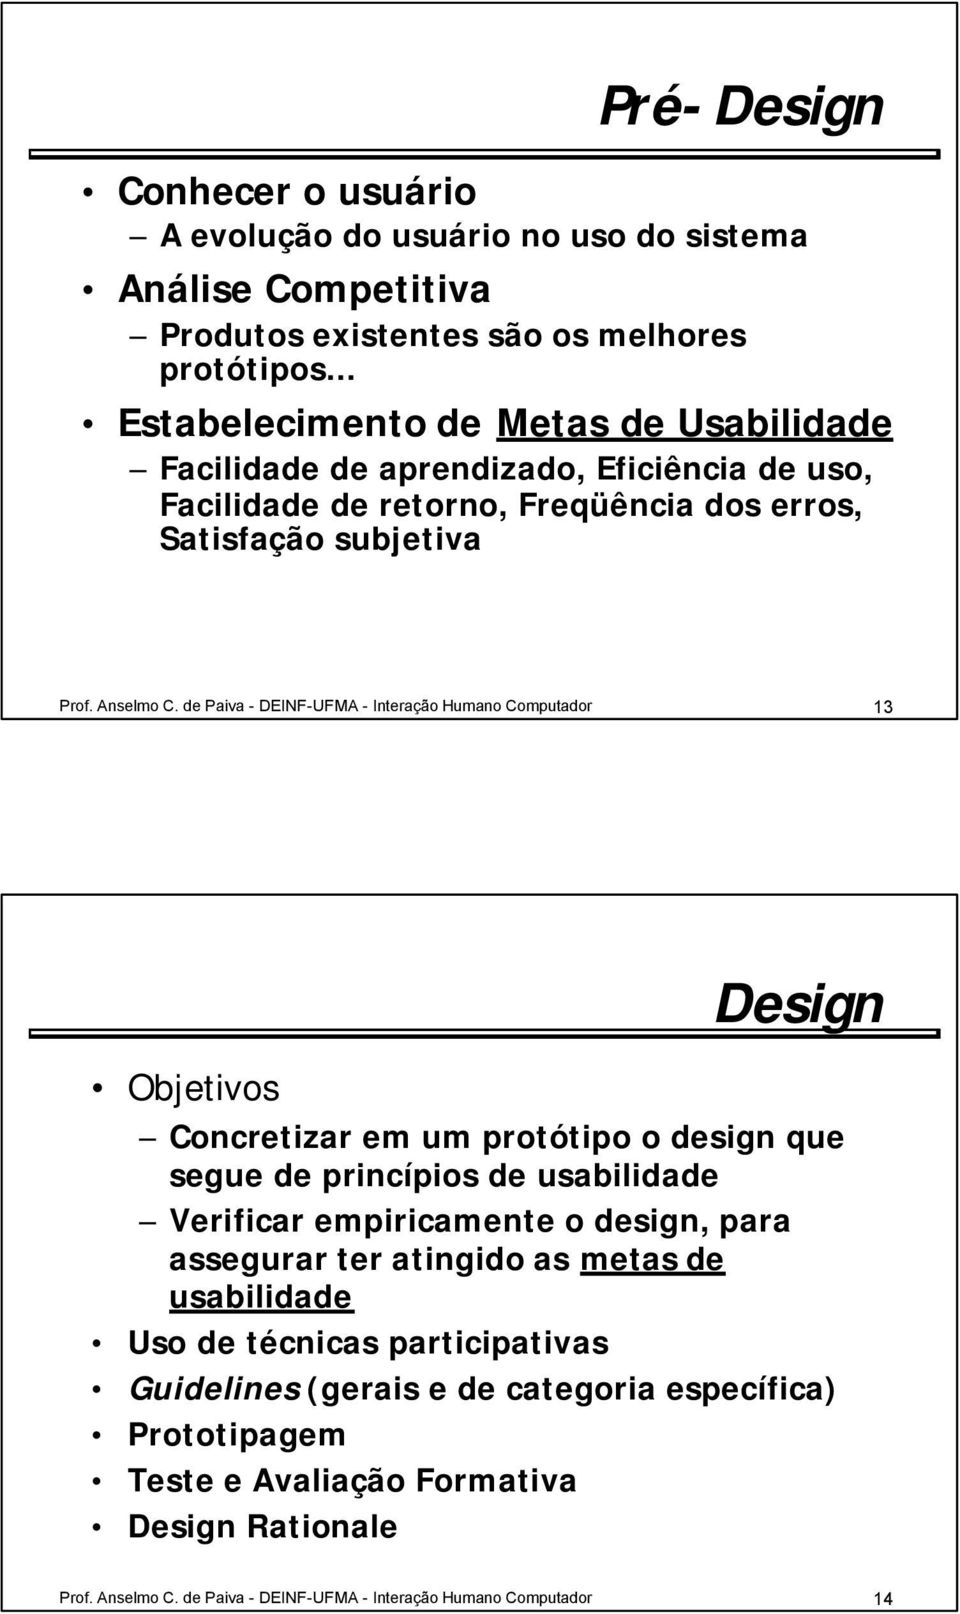 de Paiva - DEINF-UFMA - Interação Humano Computador 13 Objetivos Design Concretizar em um protótipo o design que segue de princípios de usabilidade Verificar empiricamente o design, para